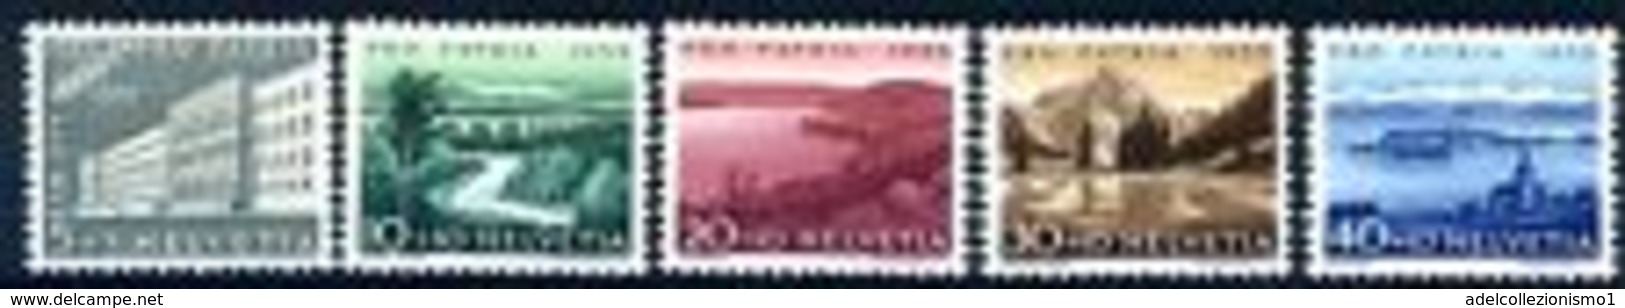 92281) LOTTO DI FRANCOBOLLI DELLA SVIZZERA 1955 - PRO PATRIA SERIE NUOVA ** - Alderney